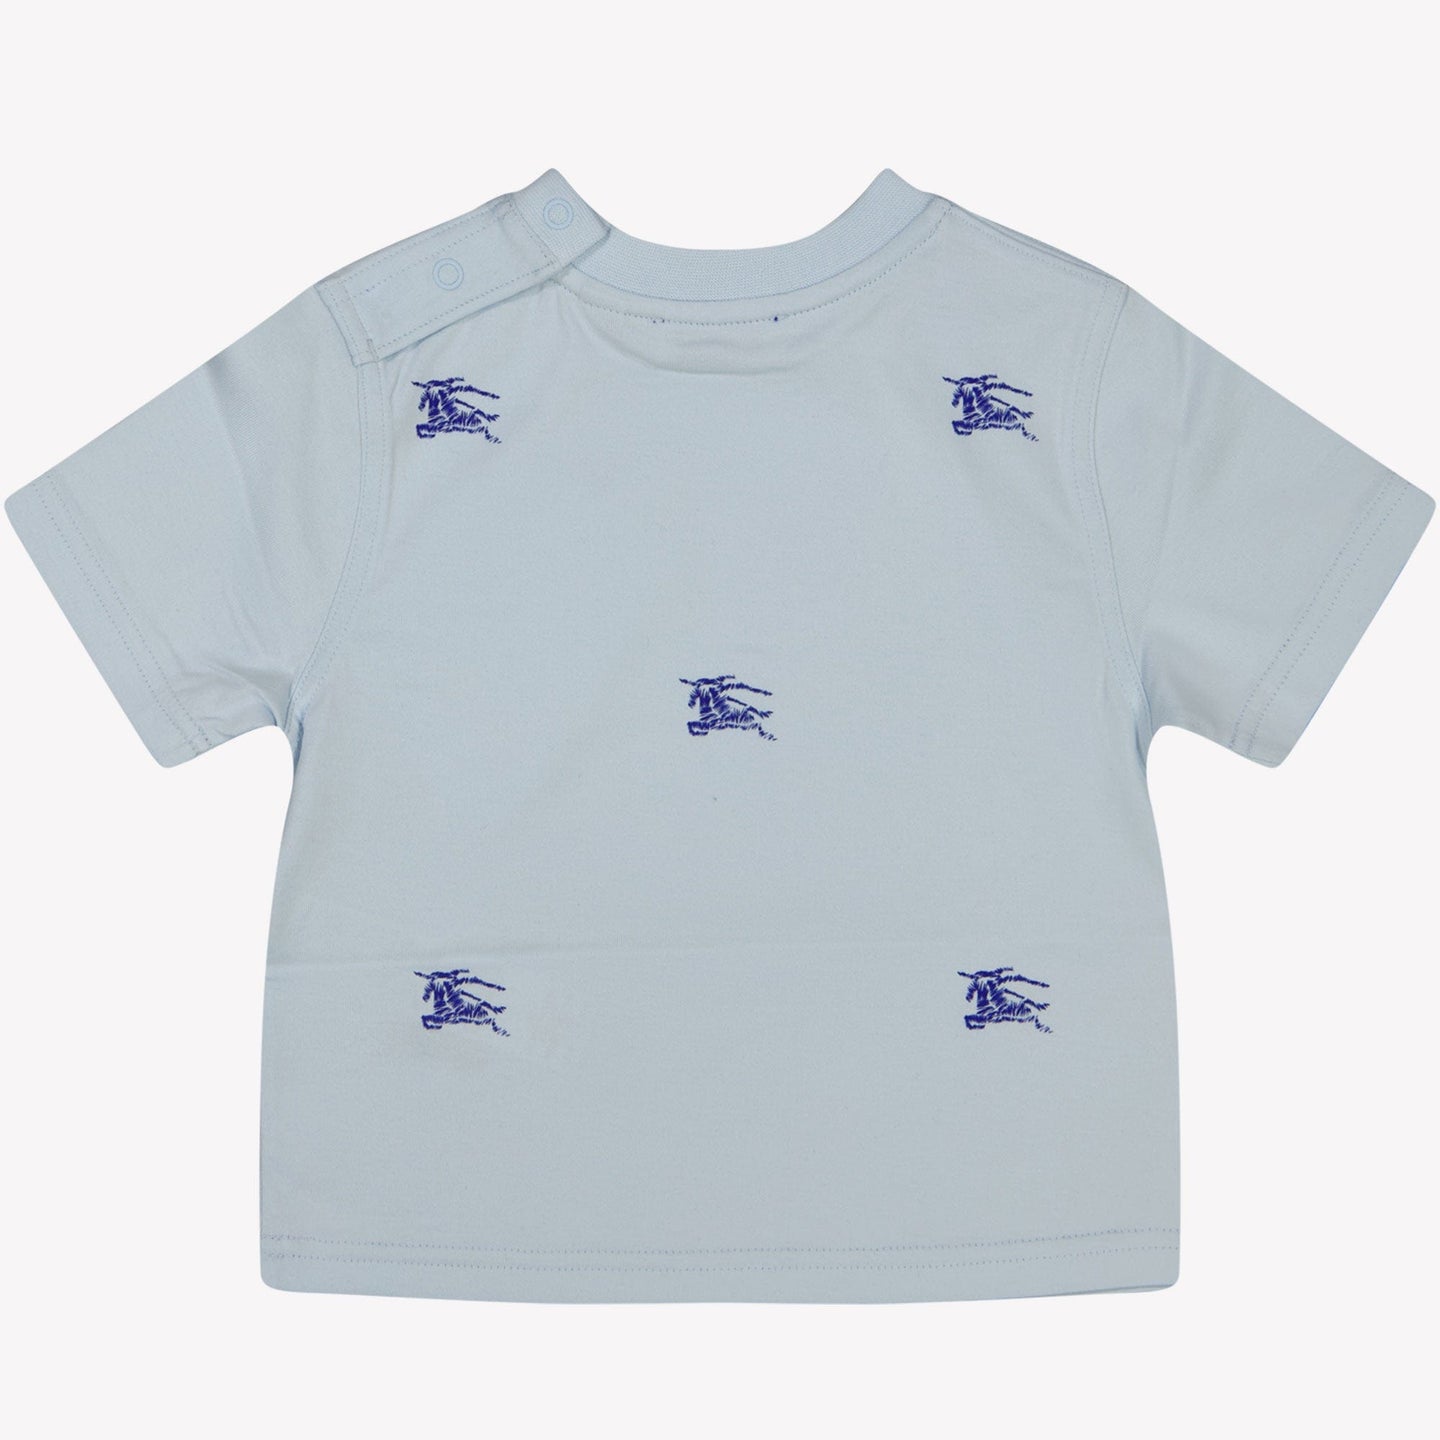 Burberry Baby Jongens T-shirt Licht Blauw 6 mnd